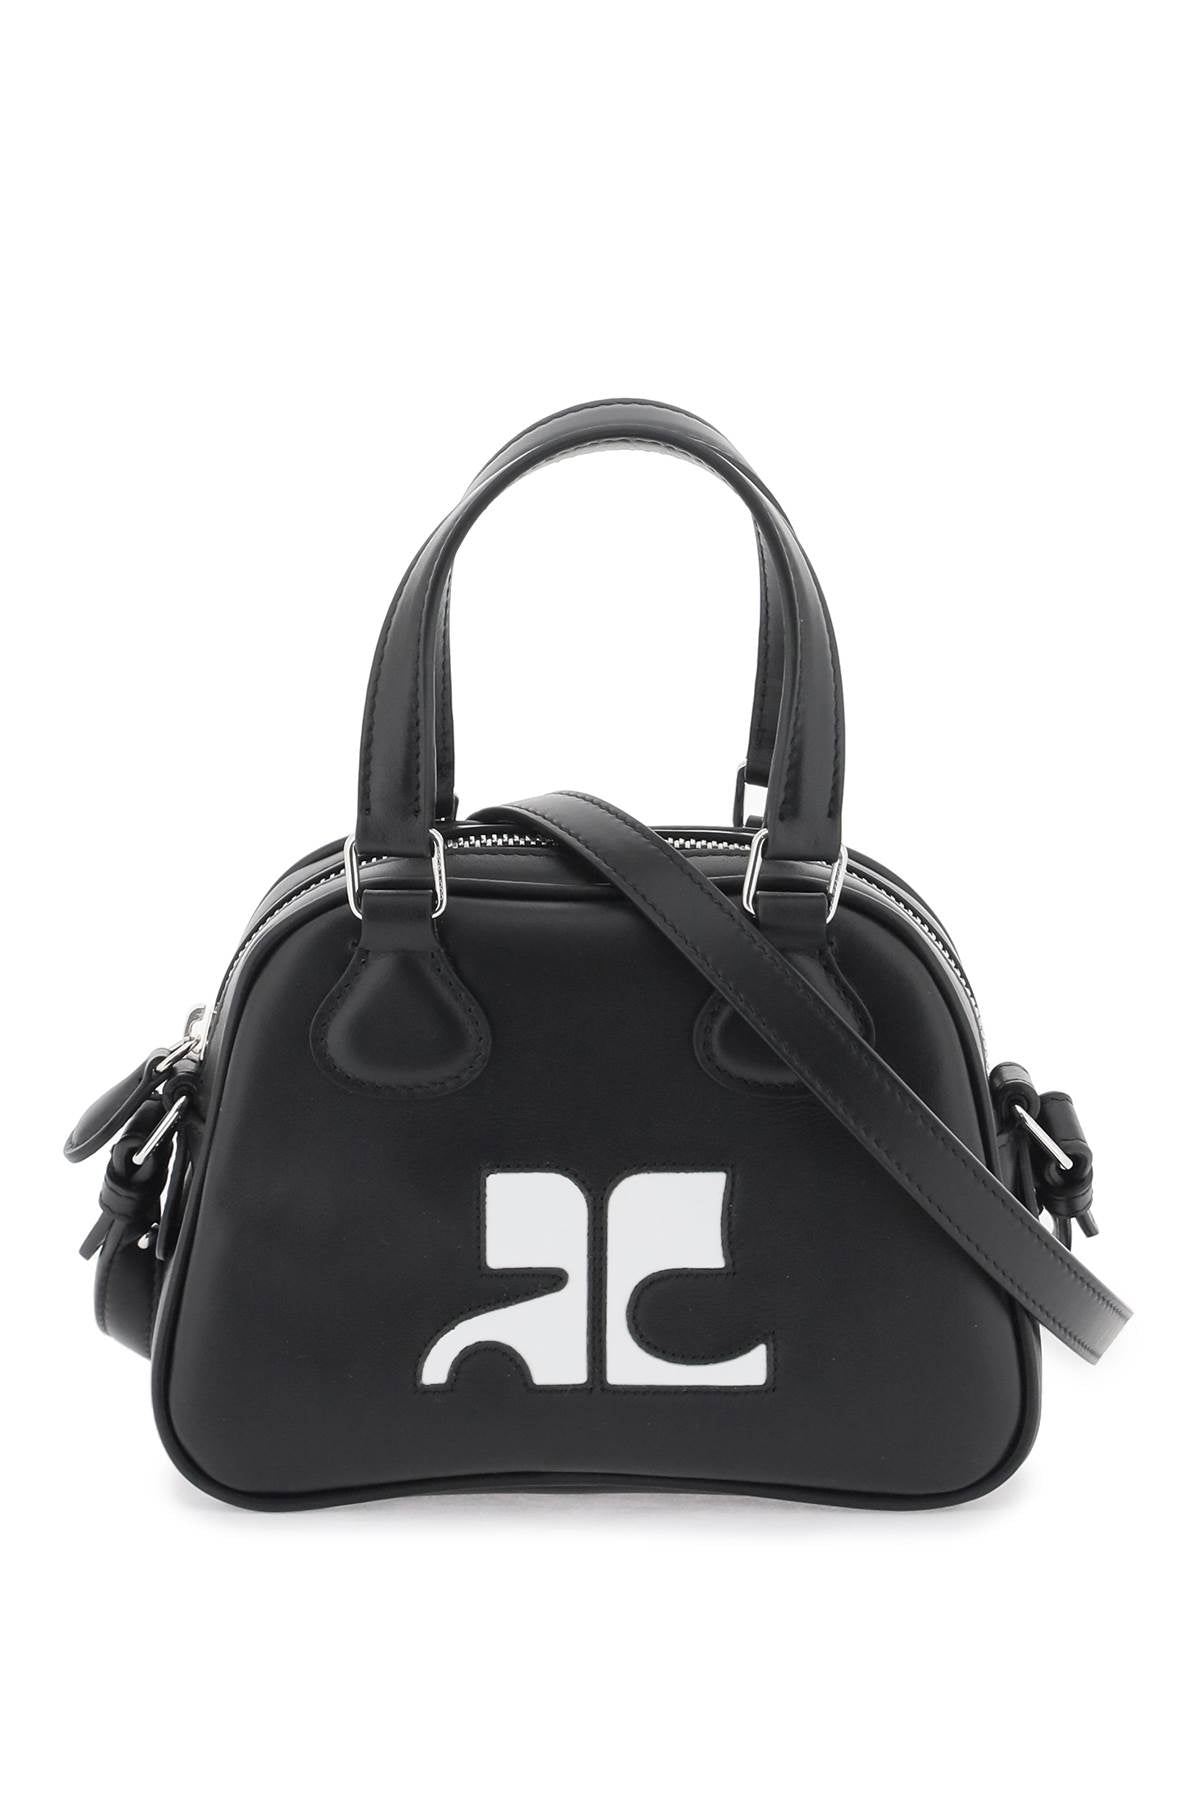 SS24女士时尚小手提包 - 皮质黑色迷你箱包